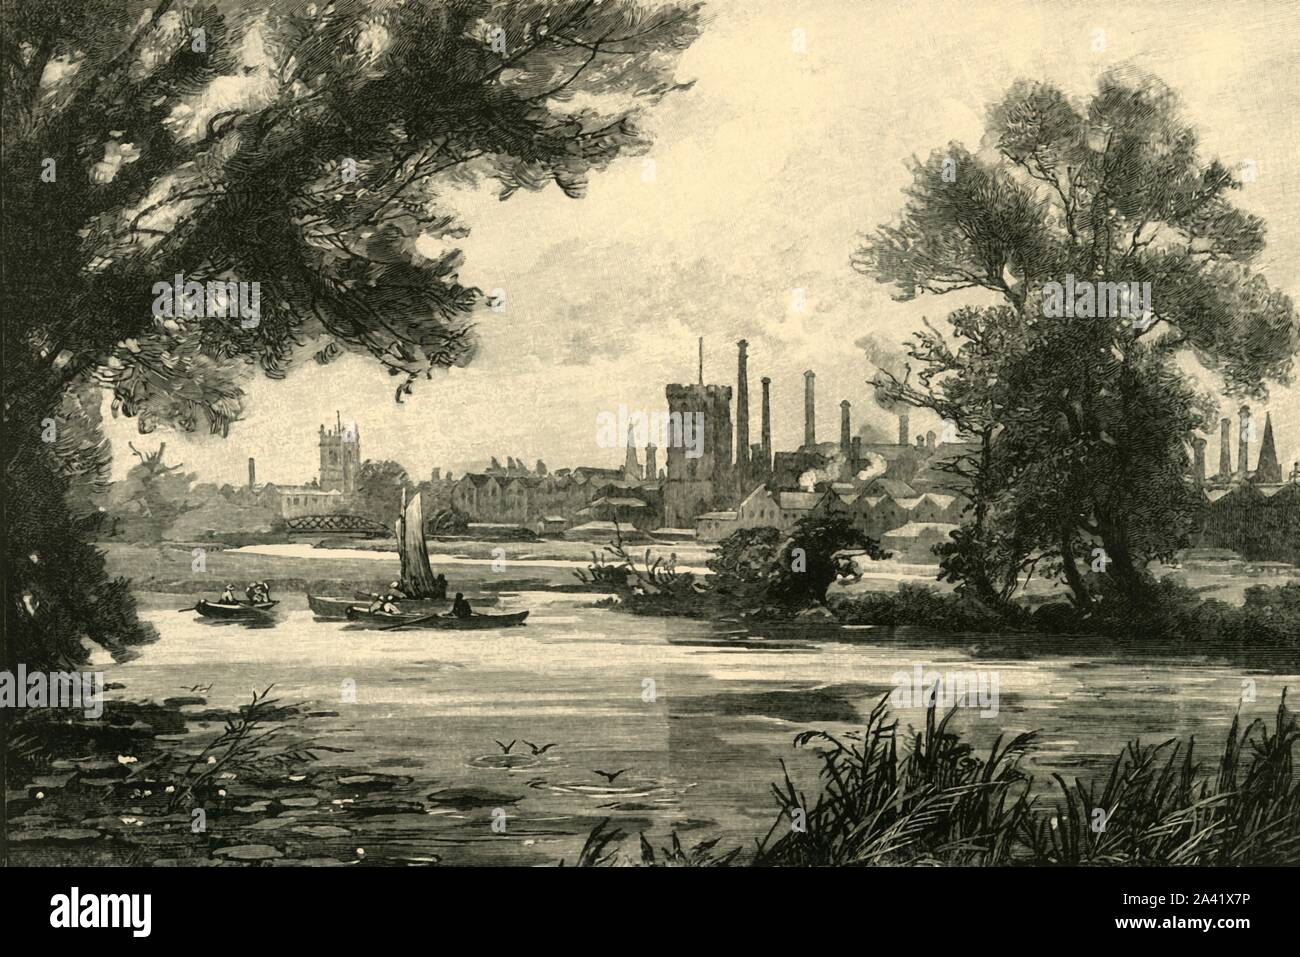 Burton-On-Trent', de 1898. Ciudad de mercado industrializadas en el río  Trent en Staffordshire, conocida para la fabricación de cerveza.  Originalmente, la ciudad creció en torno a la Abadía de Burton. "De nuestro